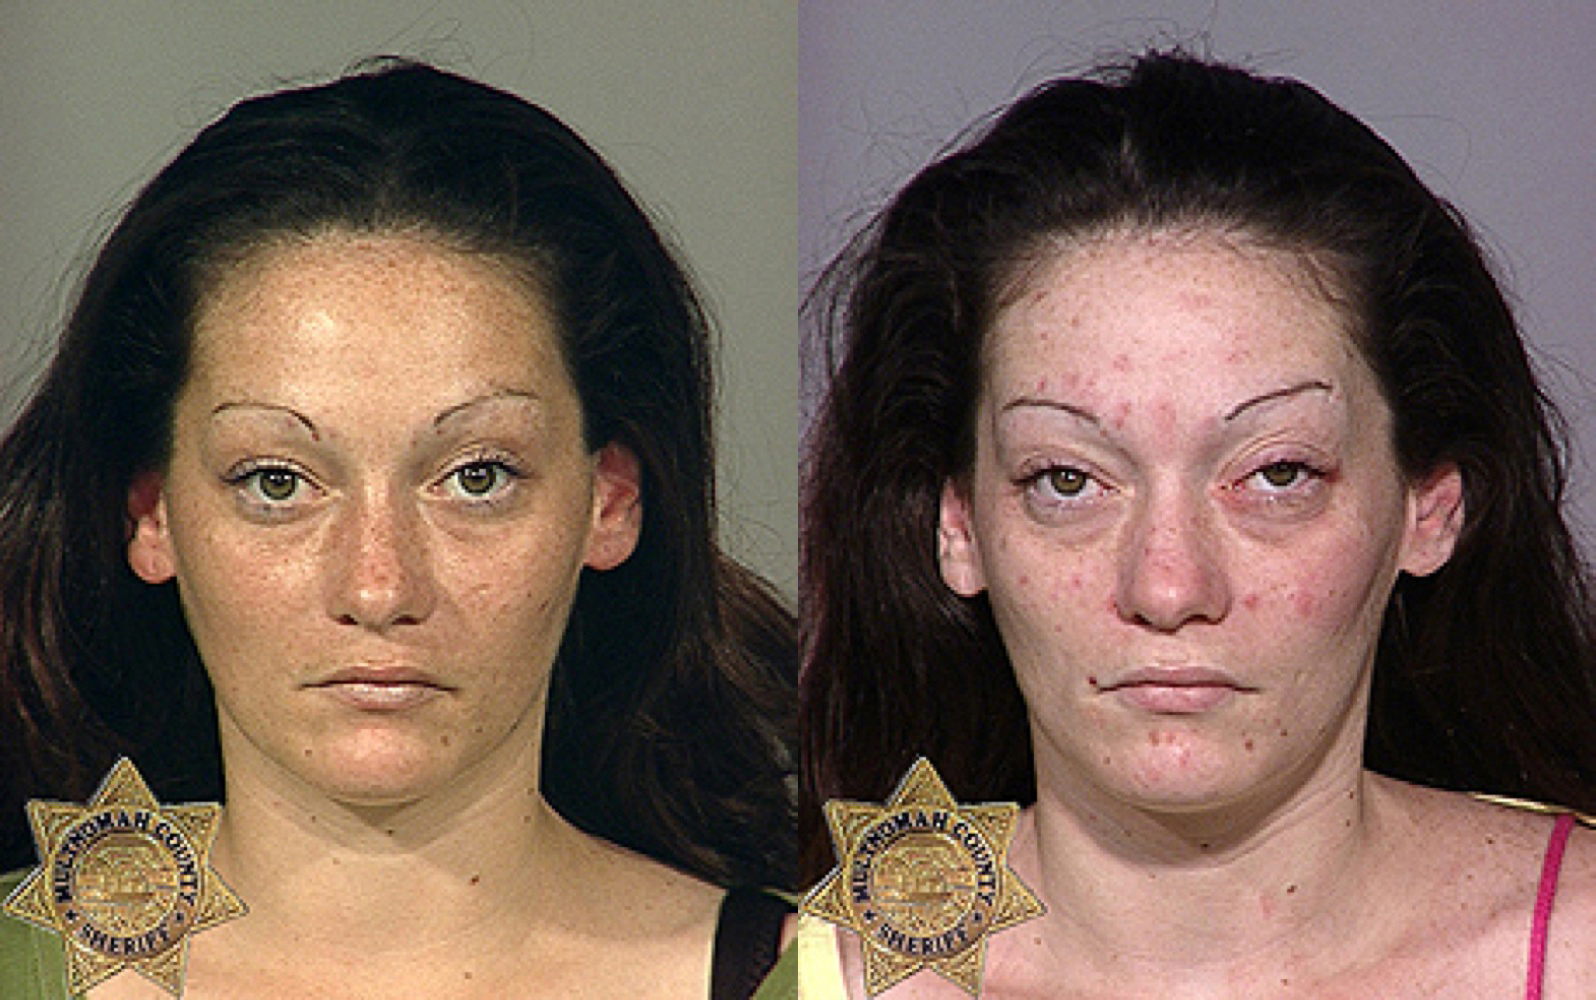 Galt drug bust results in seizure of meth, heroin, fentanyl and firearms